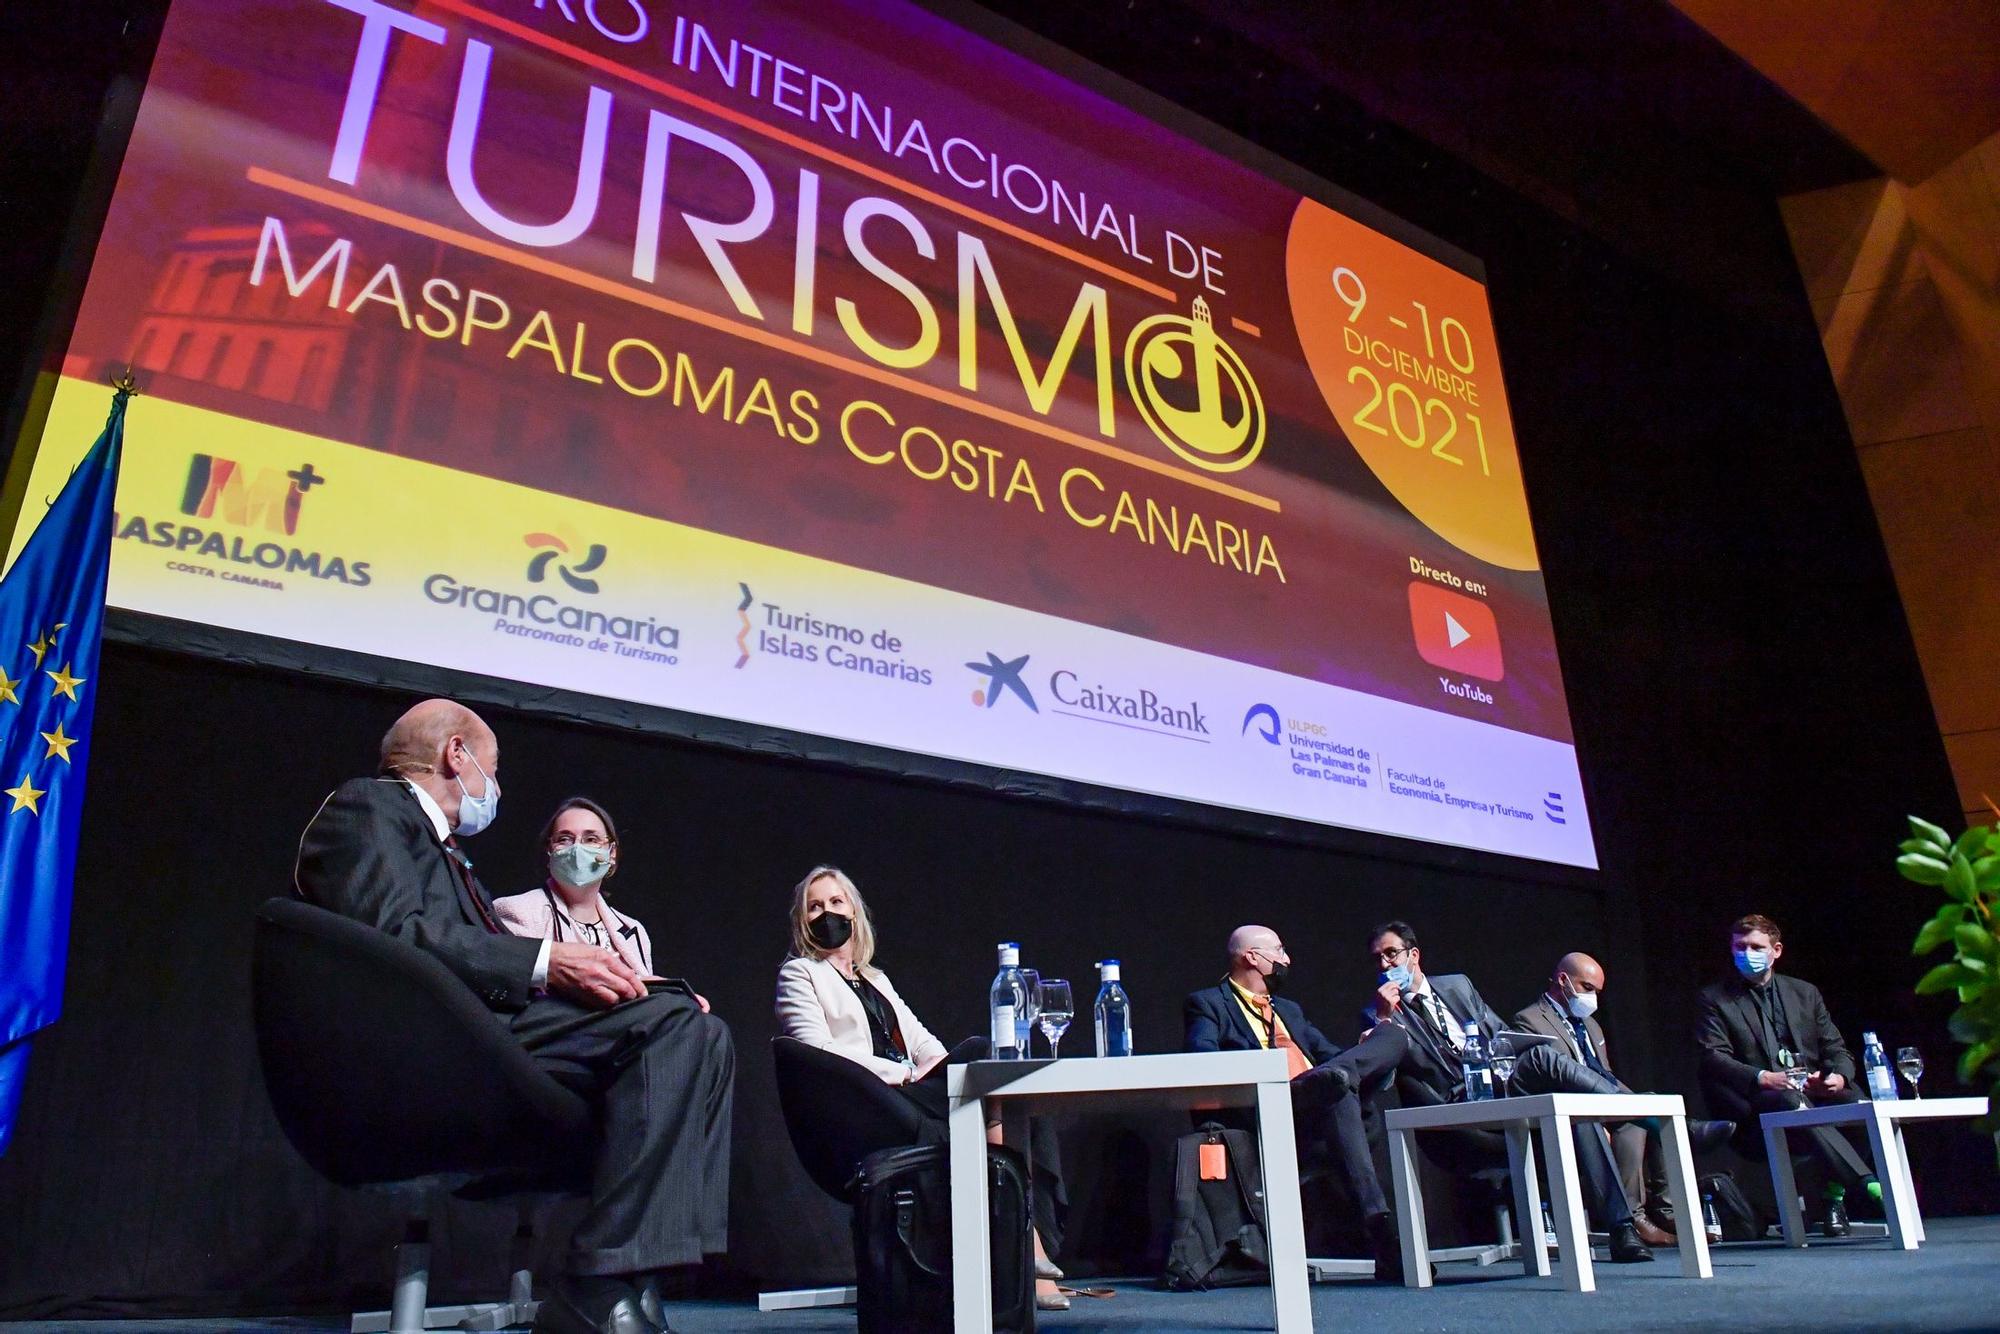 IX Foro Internacional de Turismo de Maspalomas (10/12/2021)